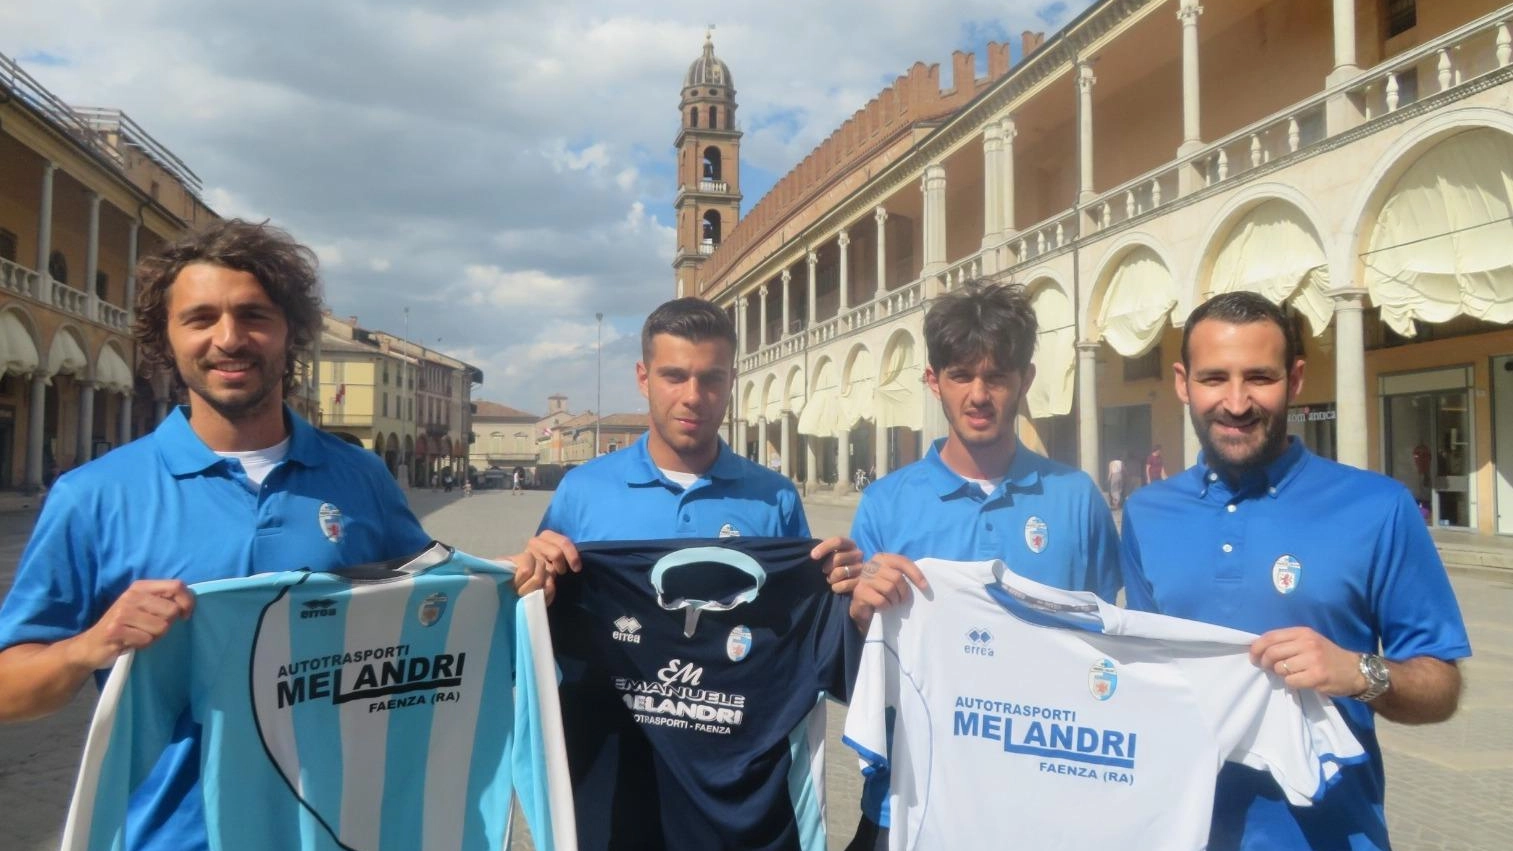 Il Faenza calcio conferma quattro giocatori chiave per la prossima stagione in Eccellenza, tra cui Albonetti e Gjordumi, elogiati per il loro contributo e esperienza.